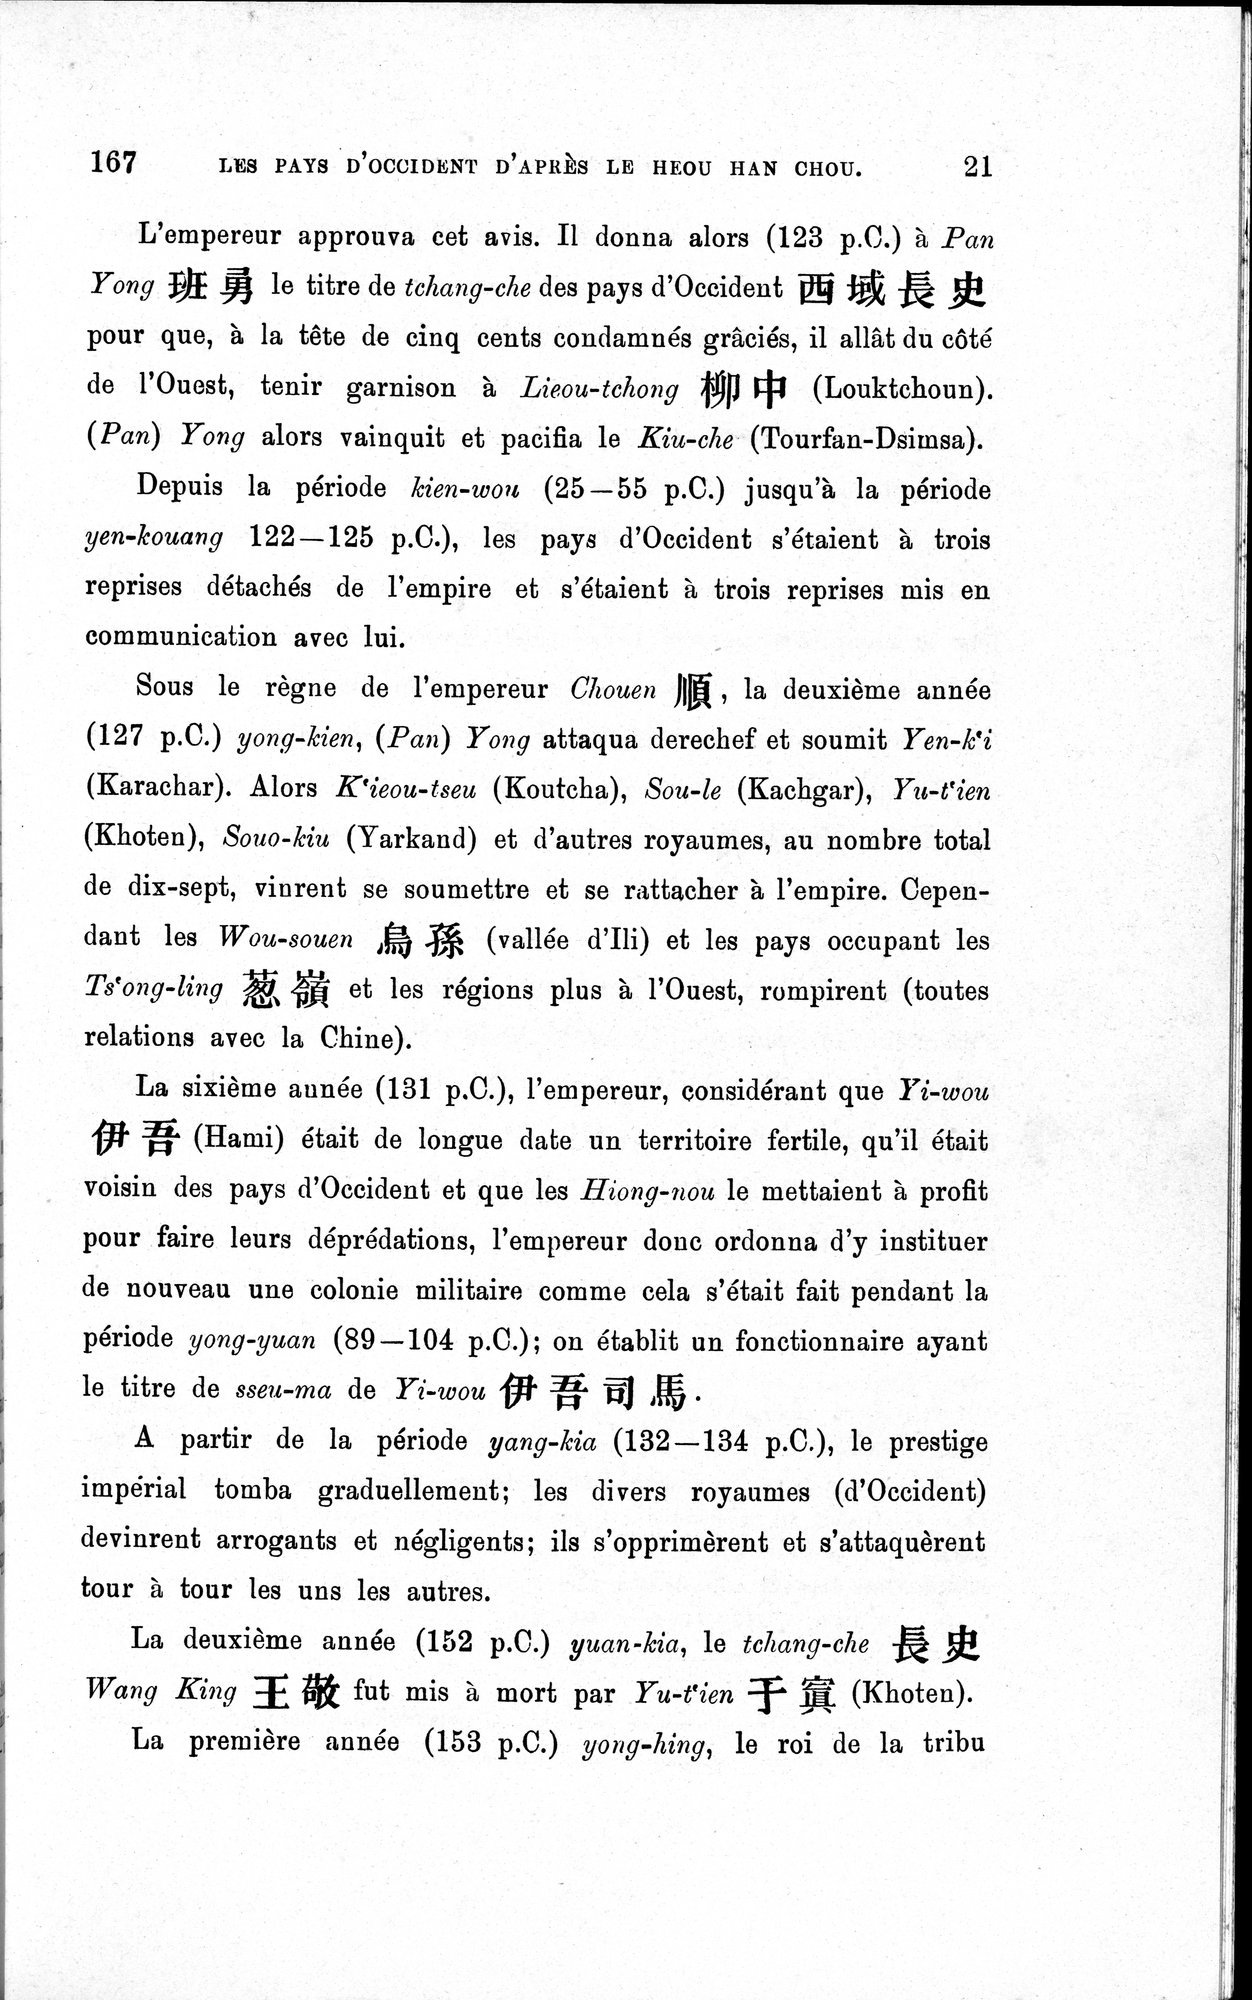 Les pays d'Occident d'après le Heou Han Chou : vol.1 / Page 29 (Grayscale High Resolution Image)